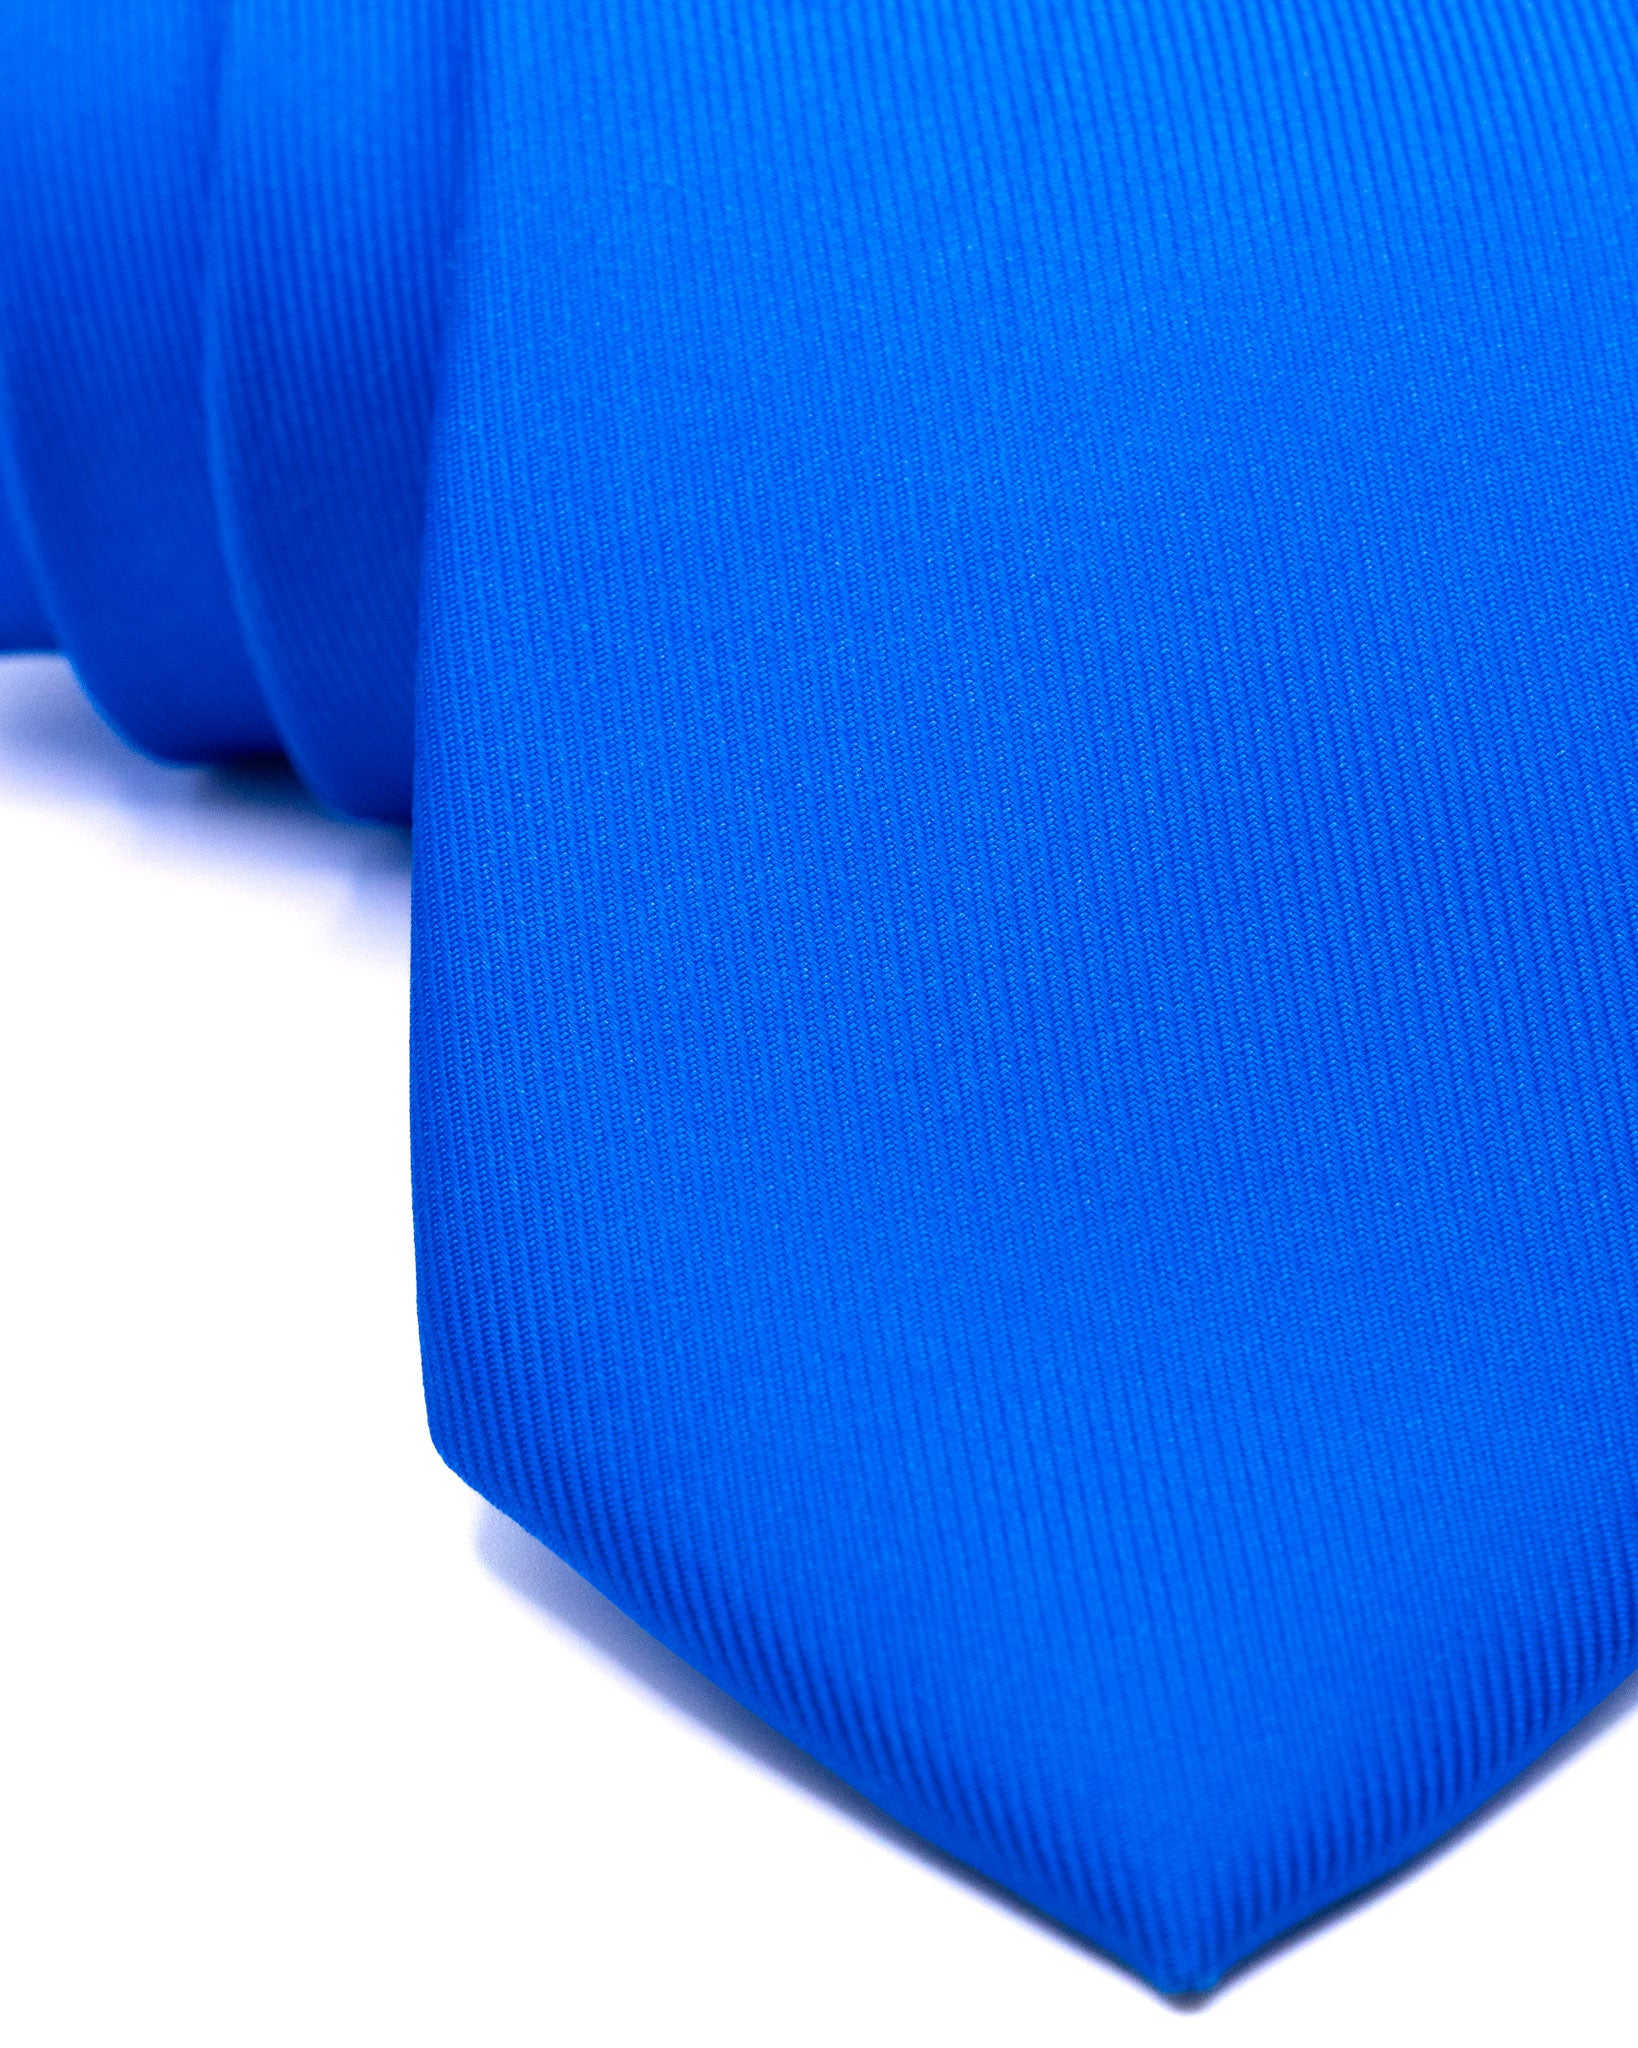 Tie - in blue woven silk